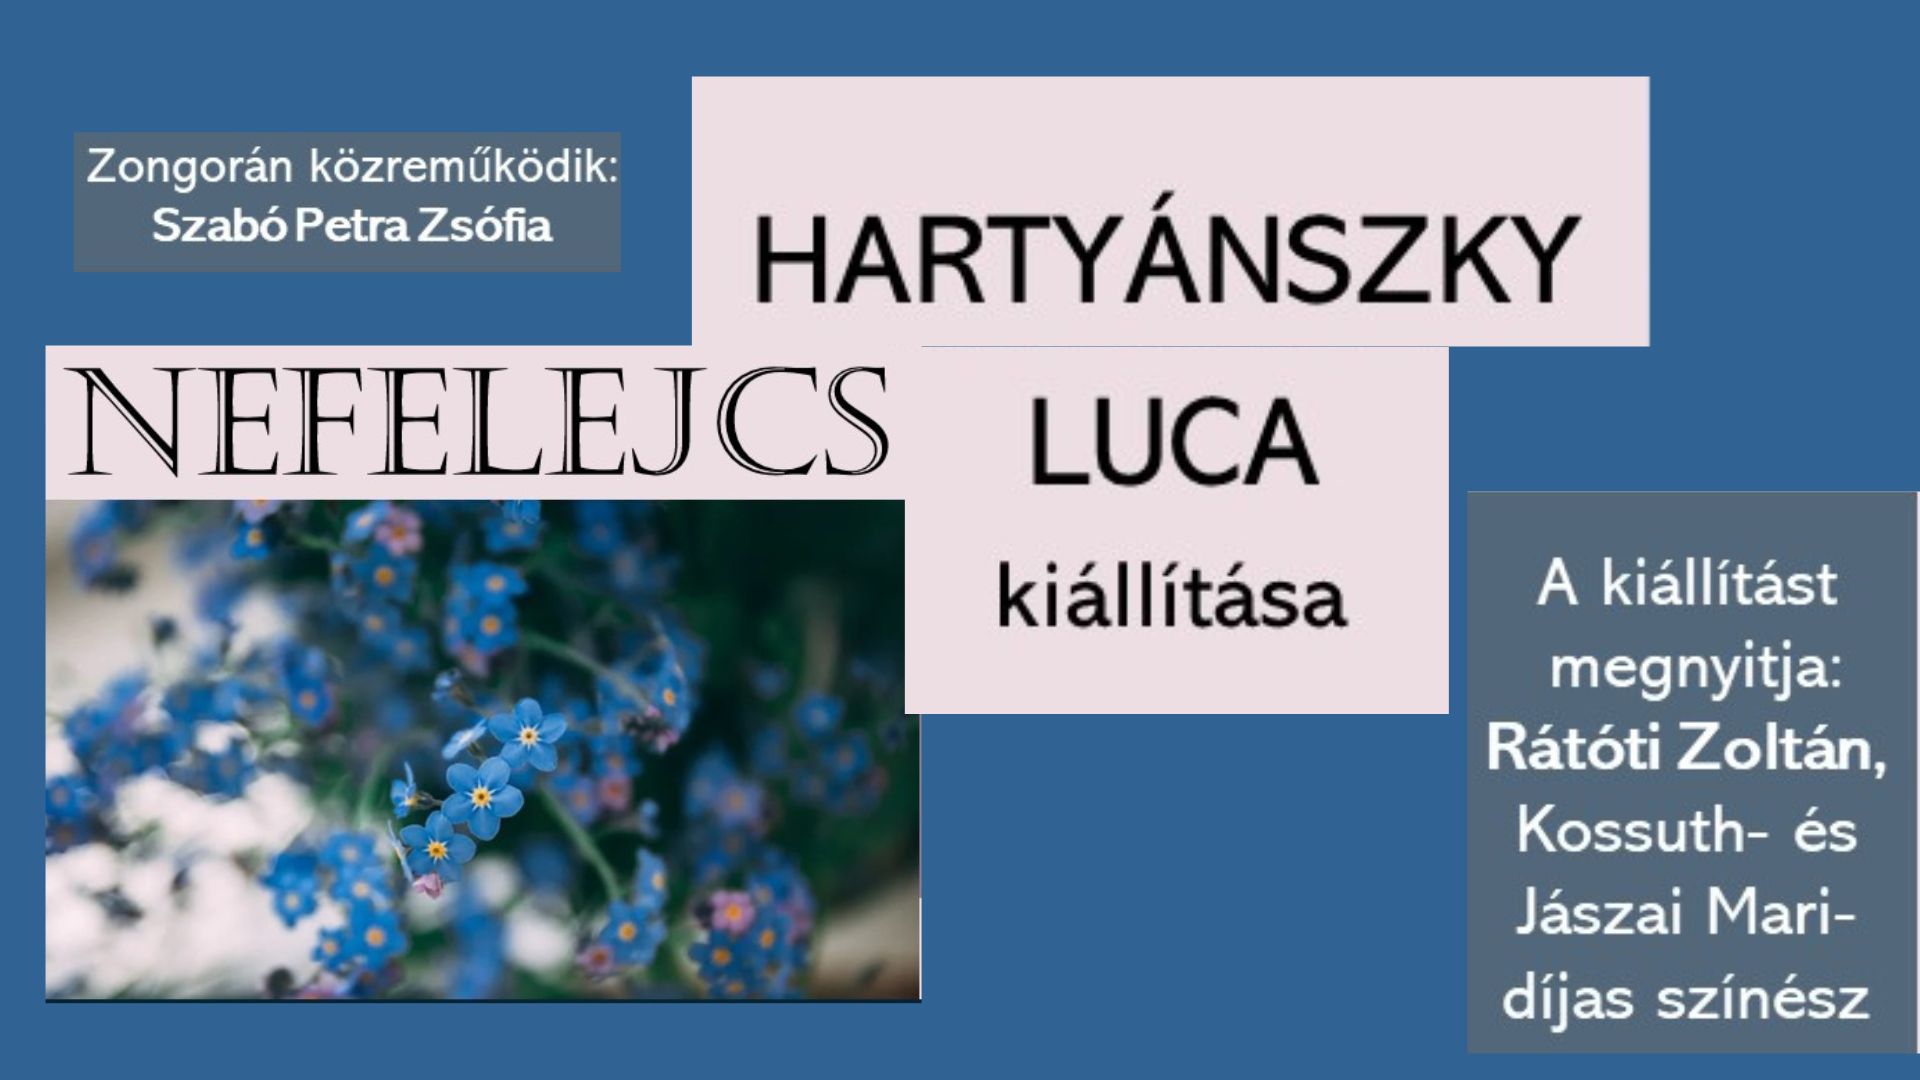 Nefelejcs - Hartyánszky Luca tanulónk kiállítása